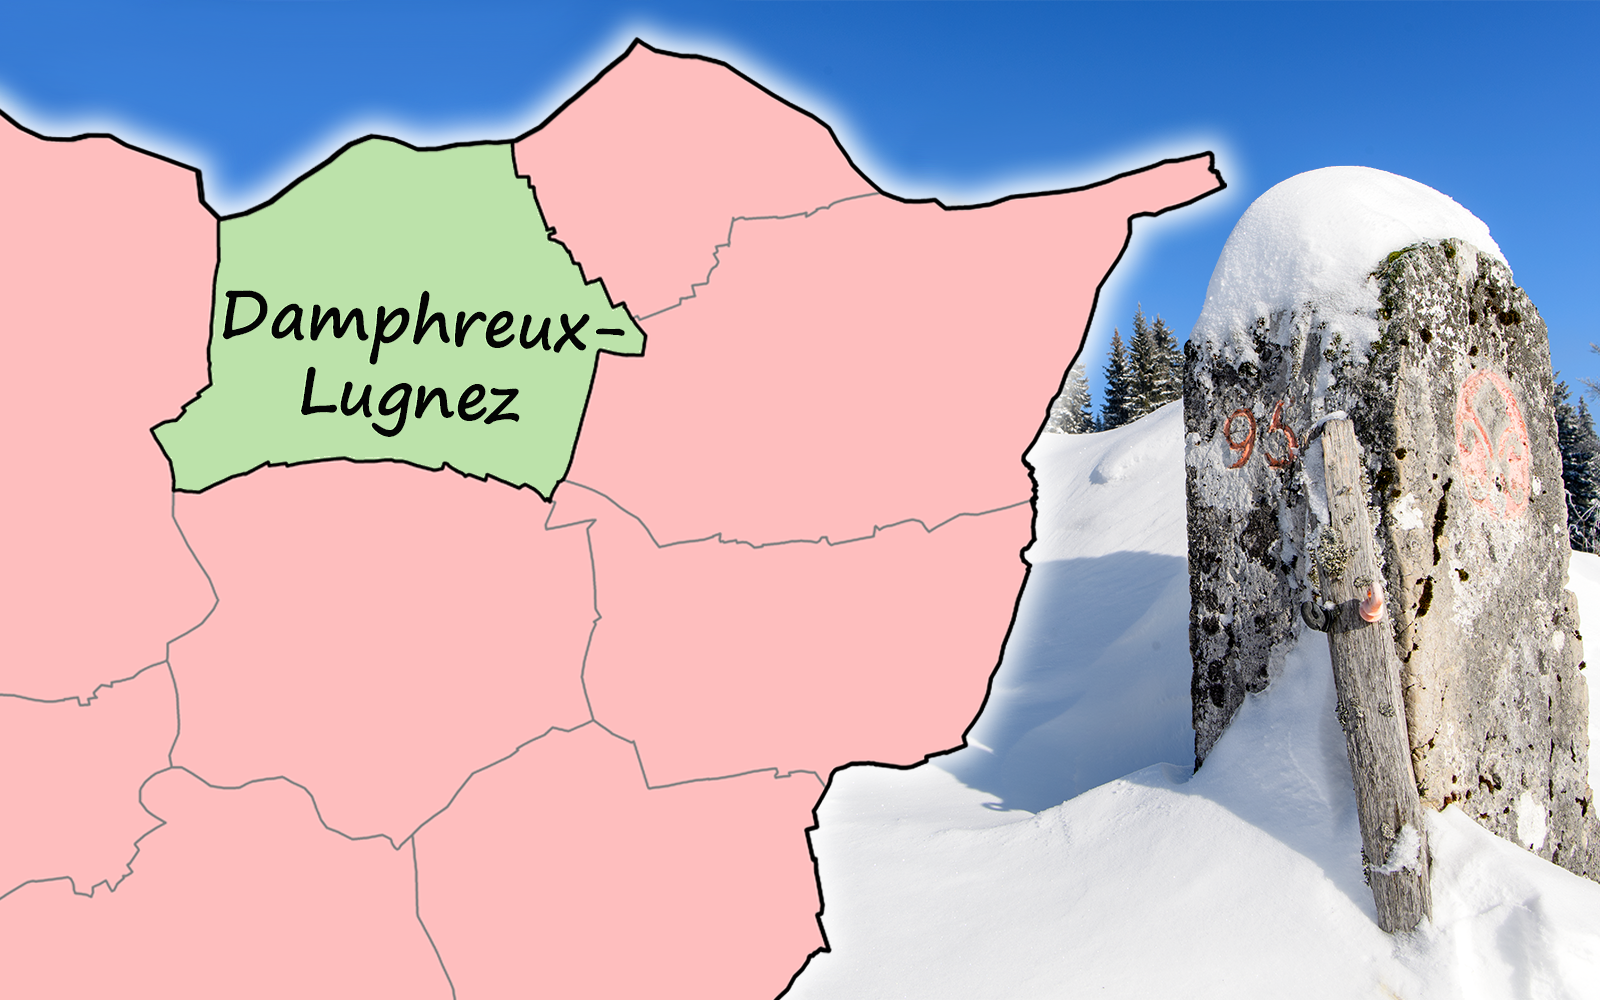 Das Bild zeigt auf der rechten Seite einen Grenzstein in schneebedeckter Landschaft. Auf der linken Seite die Gemeindegrenzen im nördlichen Teil des Kantons Jura, im französischen Grenzgebiet, mit dem Gemeindename 'Damphreux-Lugnez'. 